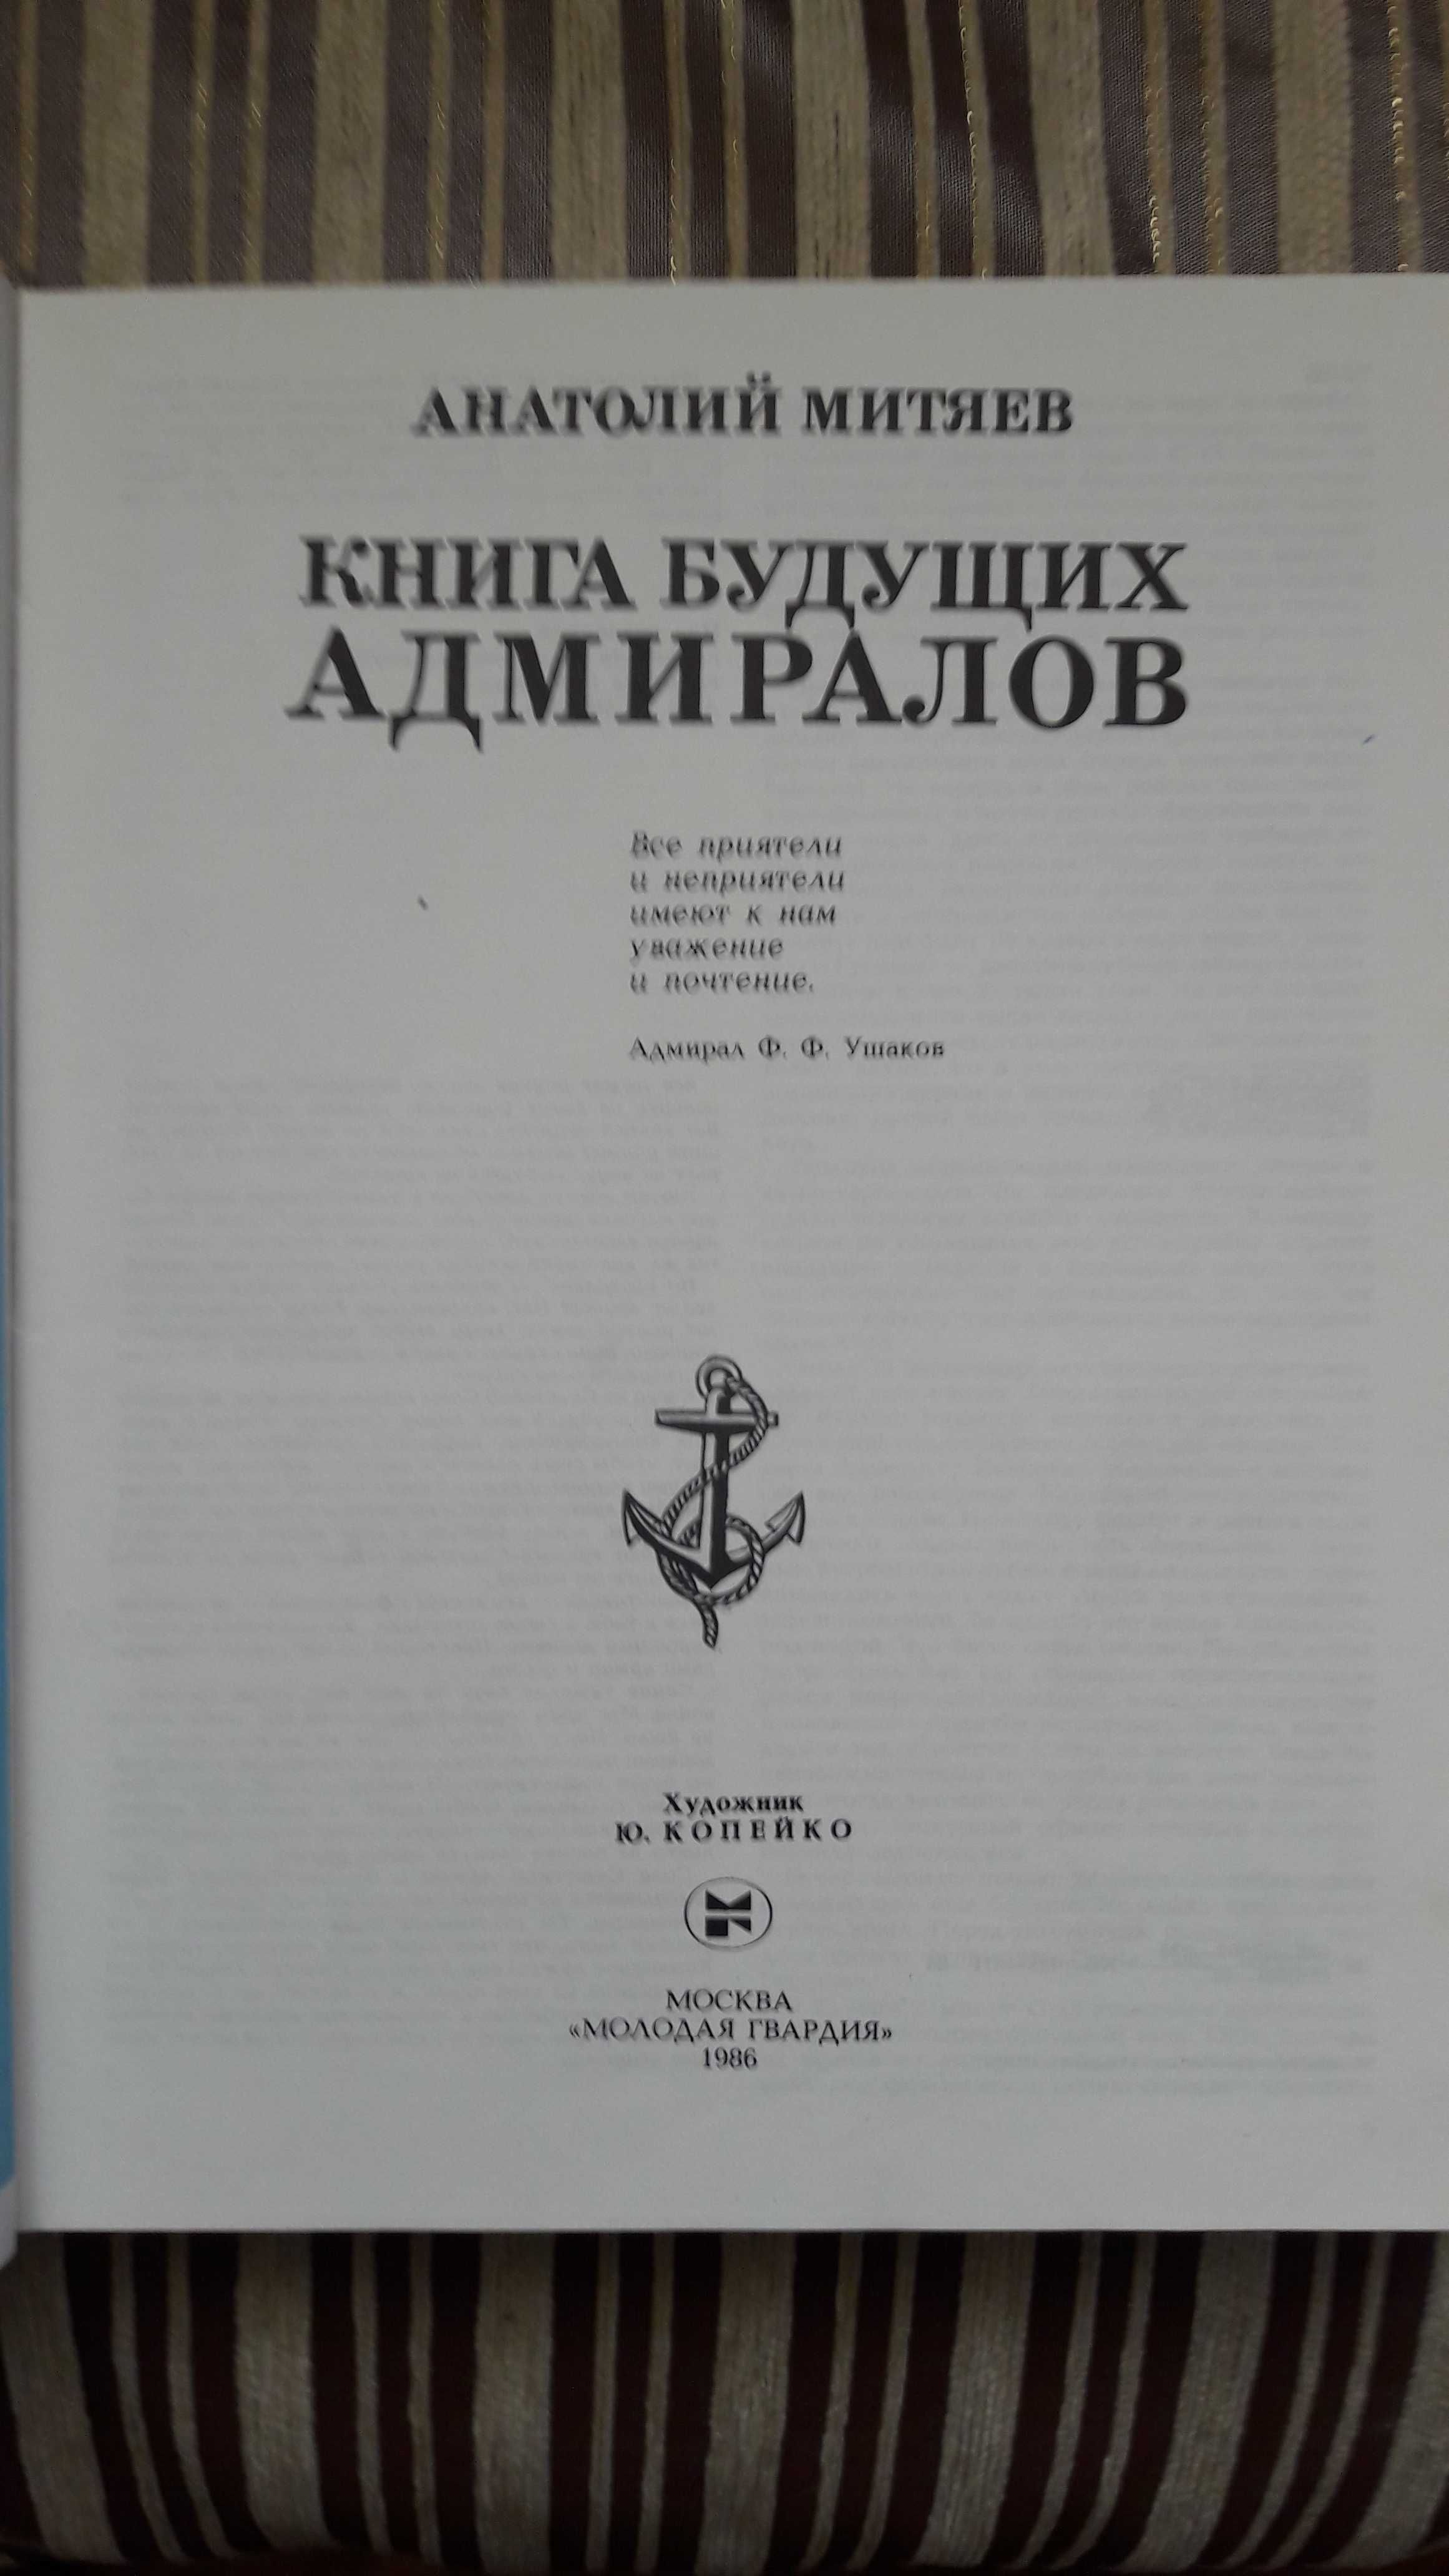 Книга будущих адмиралов.А.Митяев